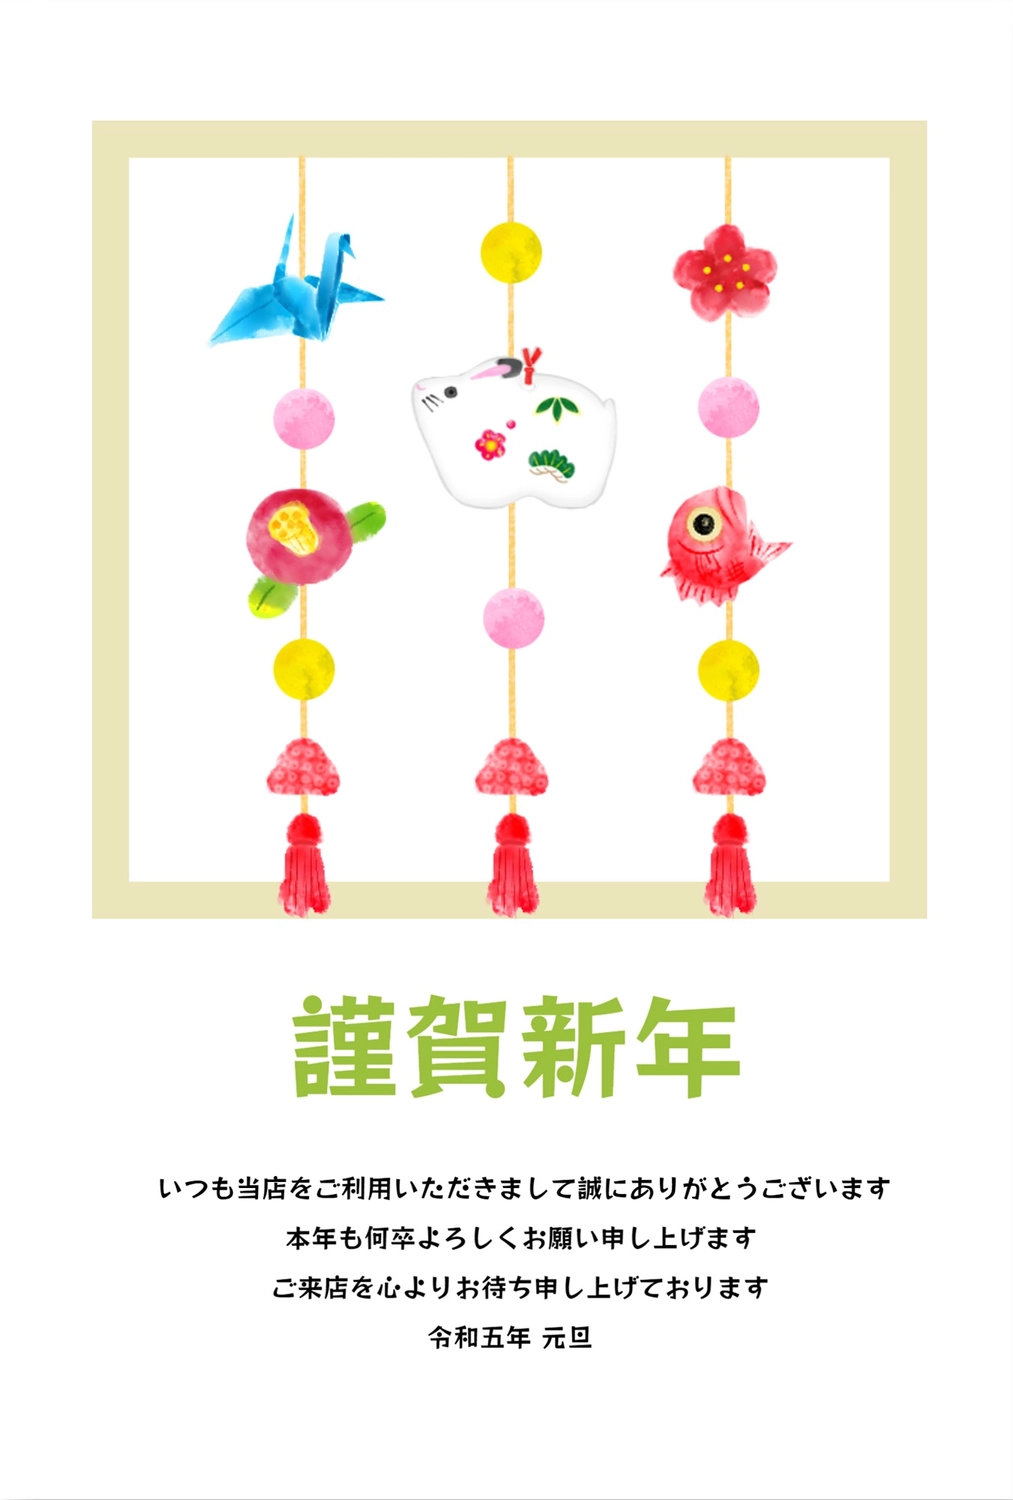 年賀状　餅花飾り, New Year's decorations, hanging decoration, decorating shrines and gates with shimenawa ropes for the New Year, New Year Card template